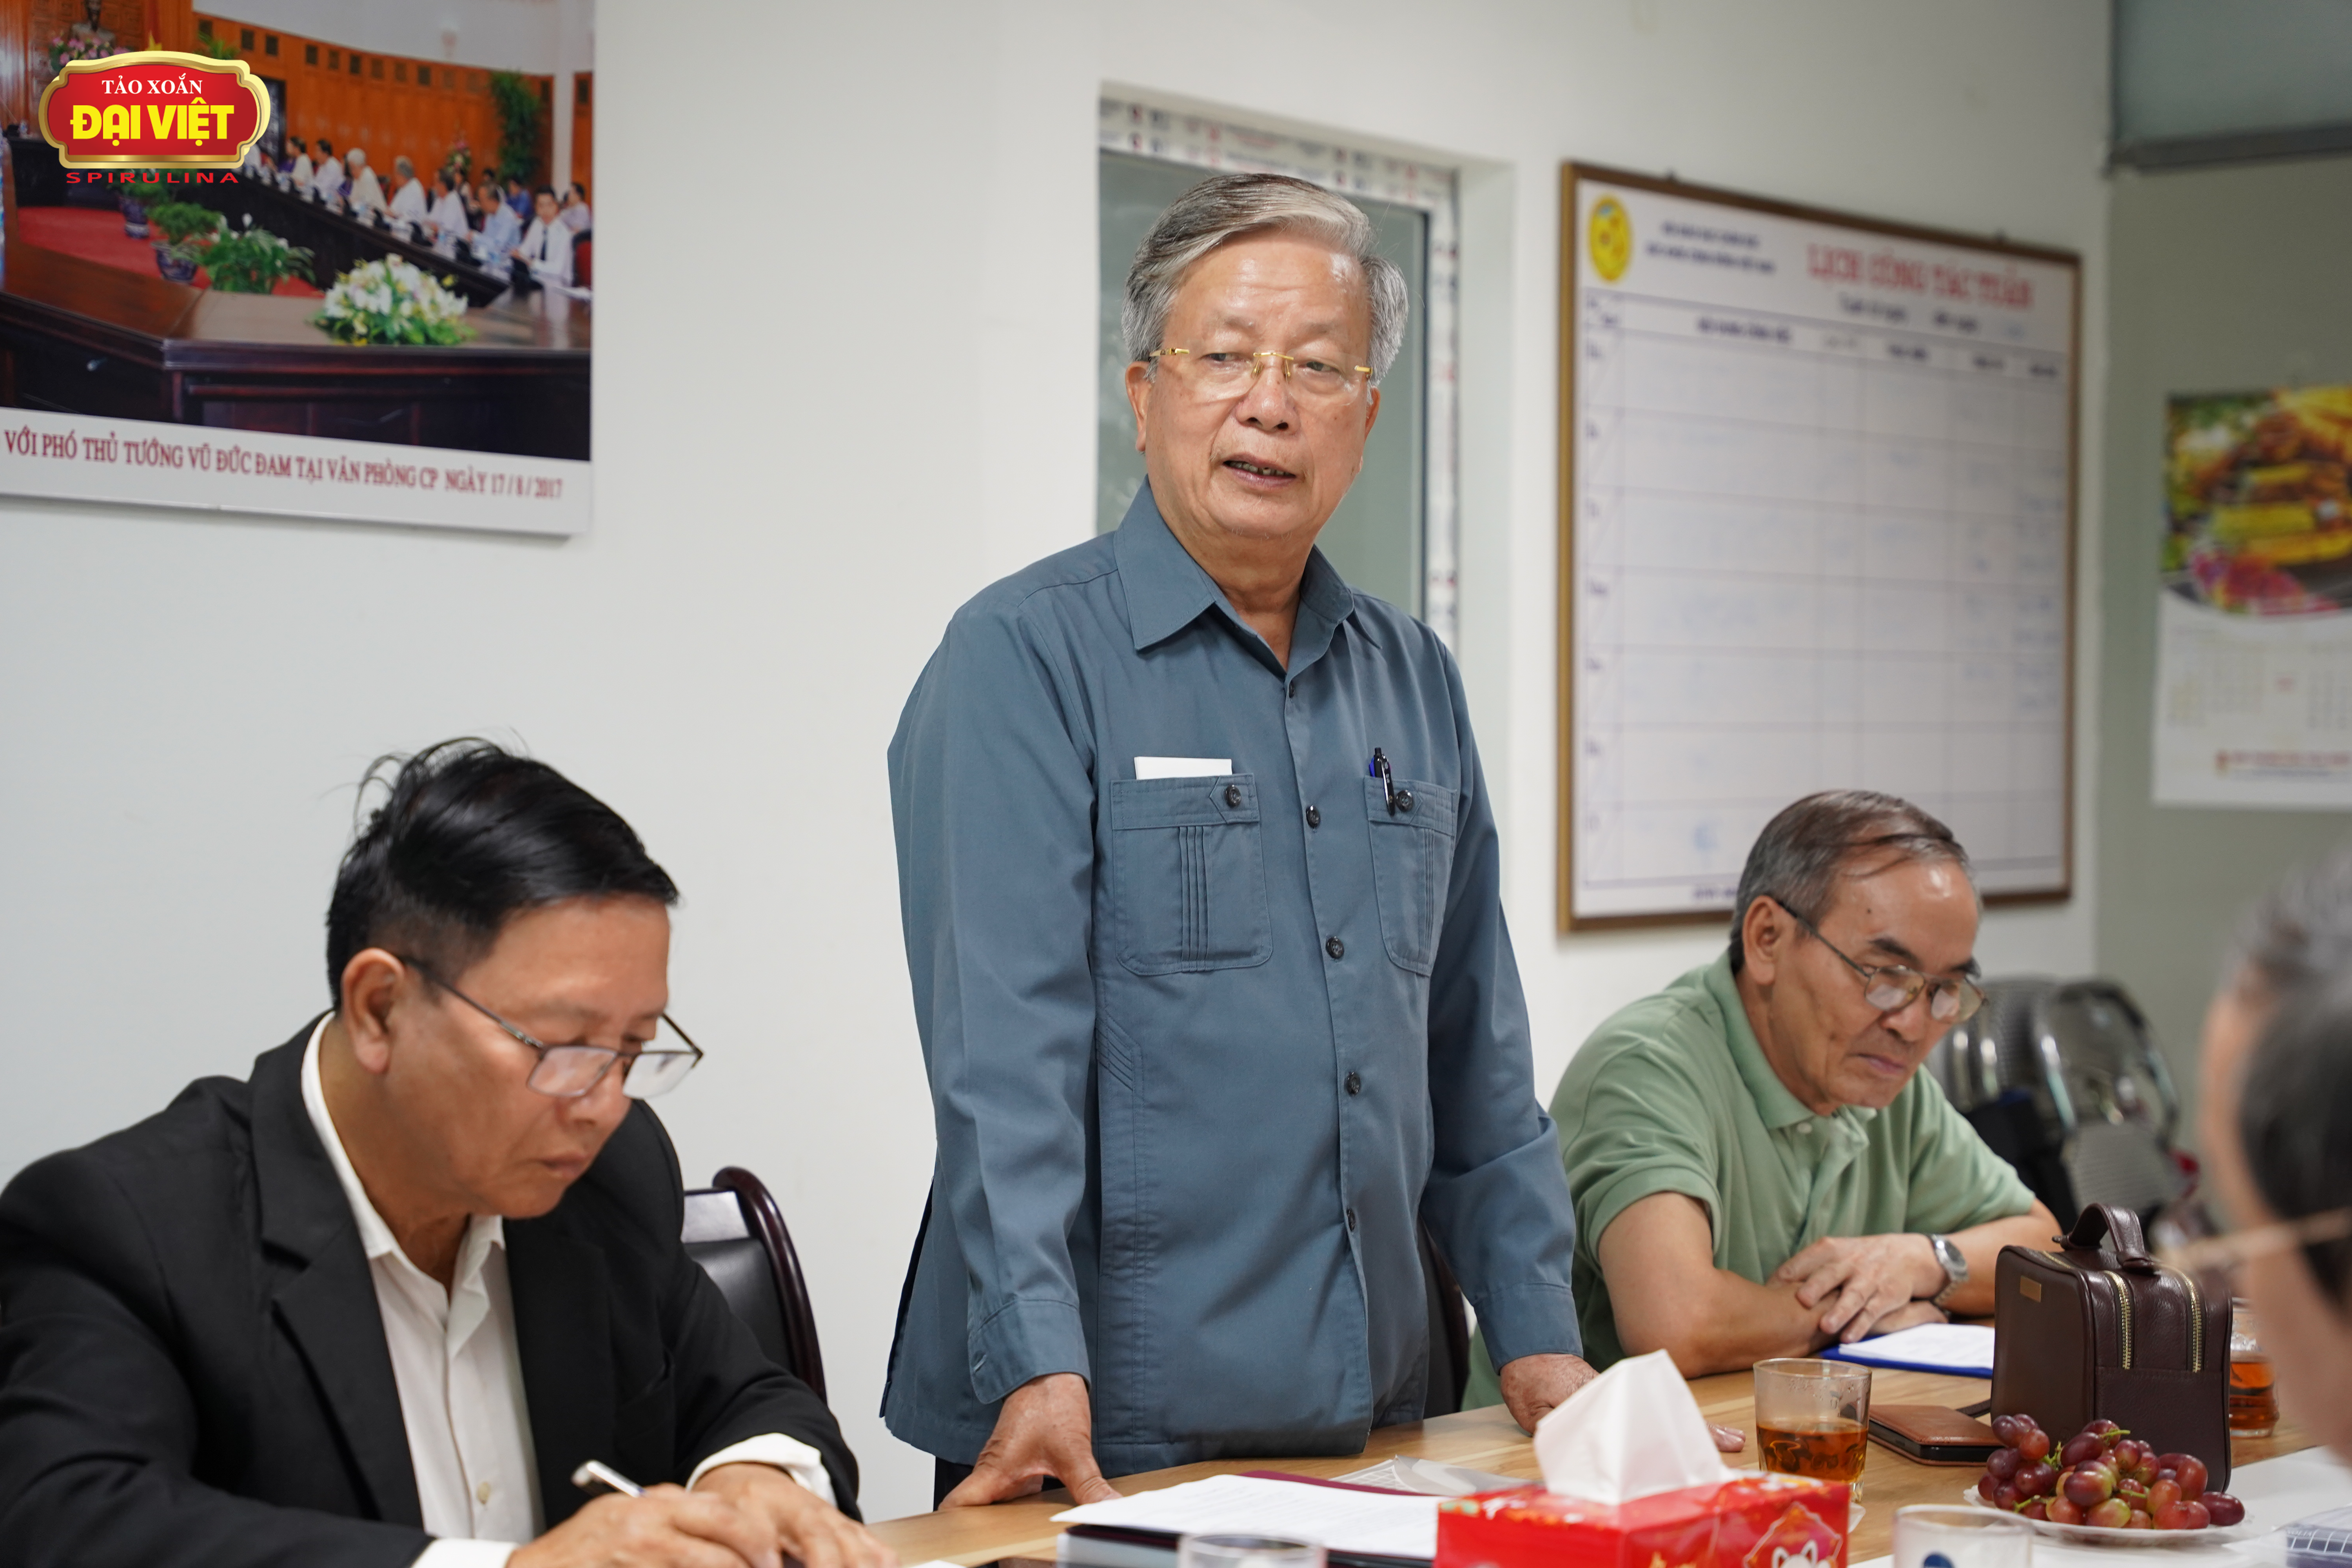 Ông Nguyễn Hồng Quân - Chủ tịch Hội GDCSSKCĐ Việt Nam phát biểu khai mạc và đóng góp, xây dựng cho cuộc họp đánh giá công trình nghiên cứu của Tảo xoắn Đại Việt